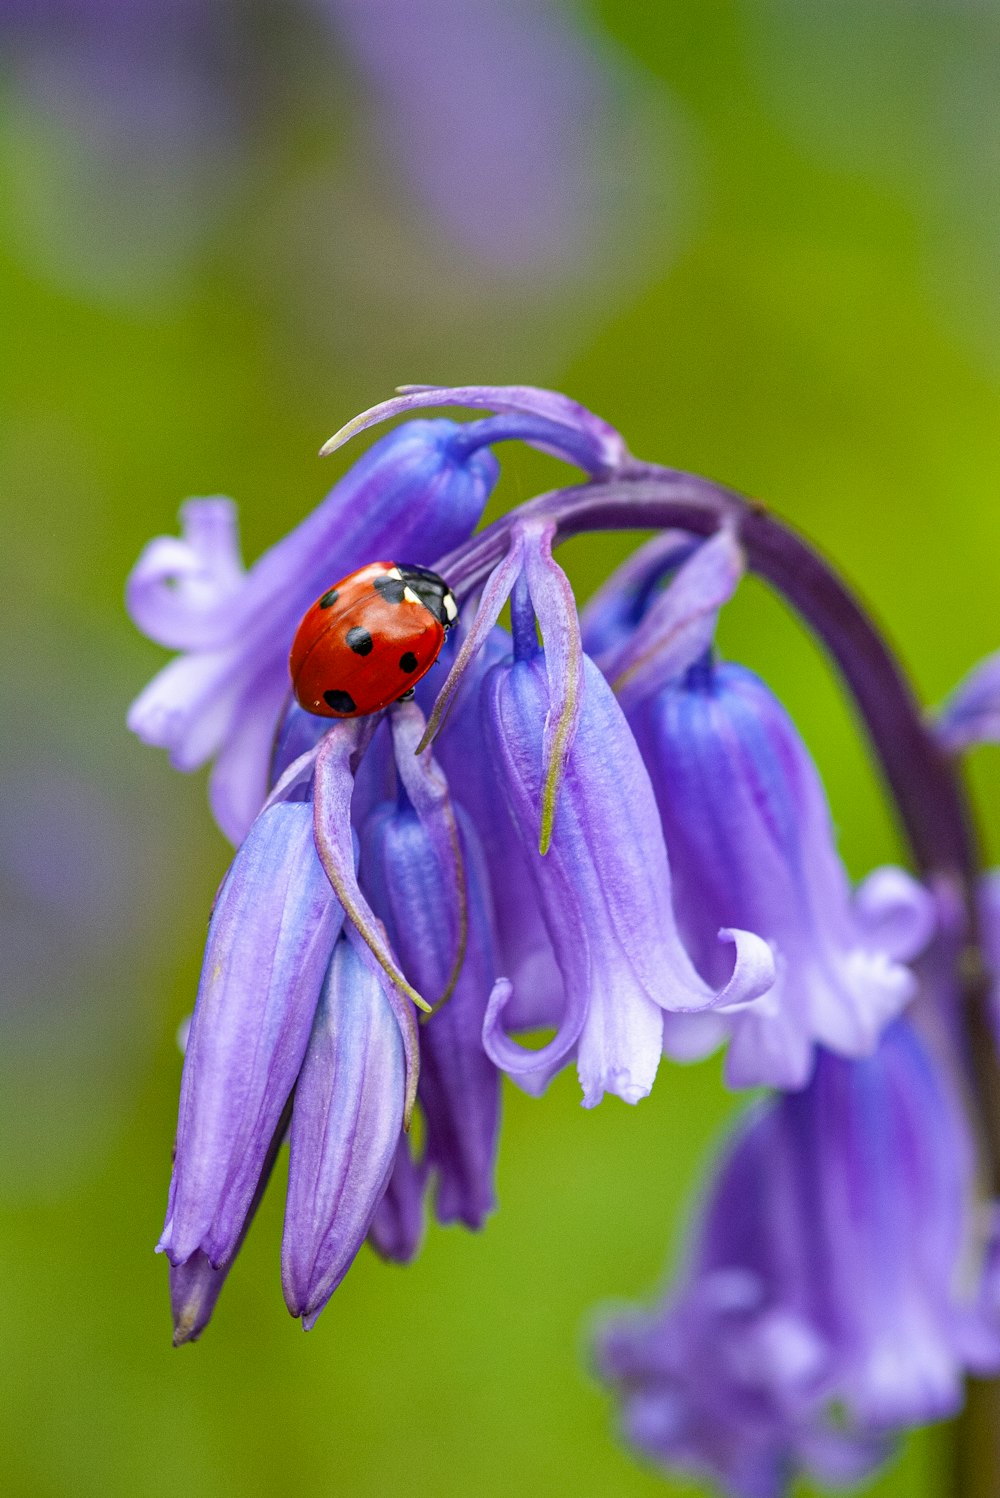 a lady bug sitting on a purple flower